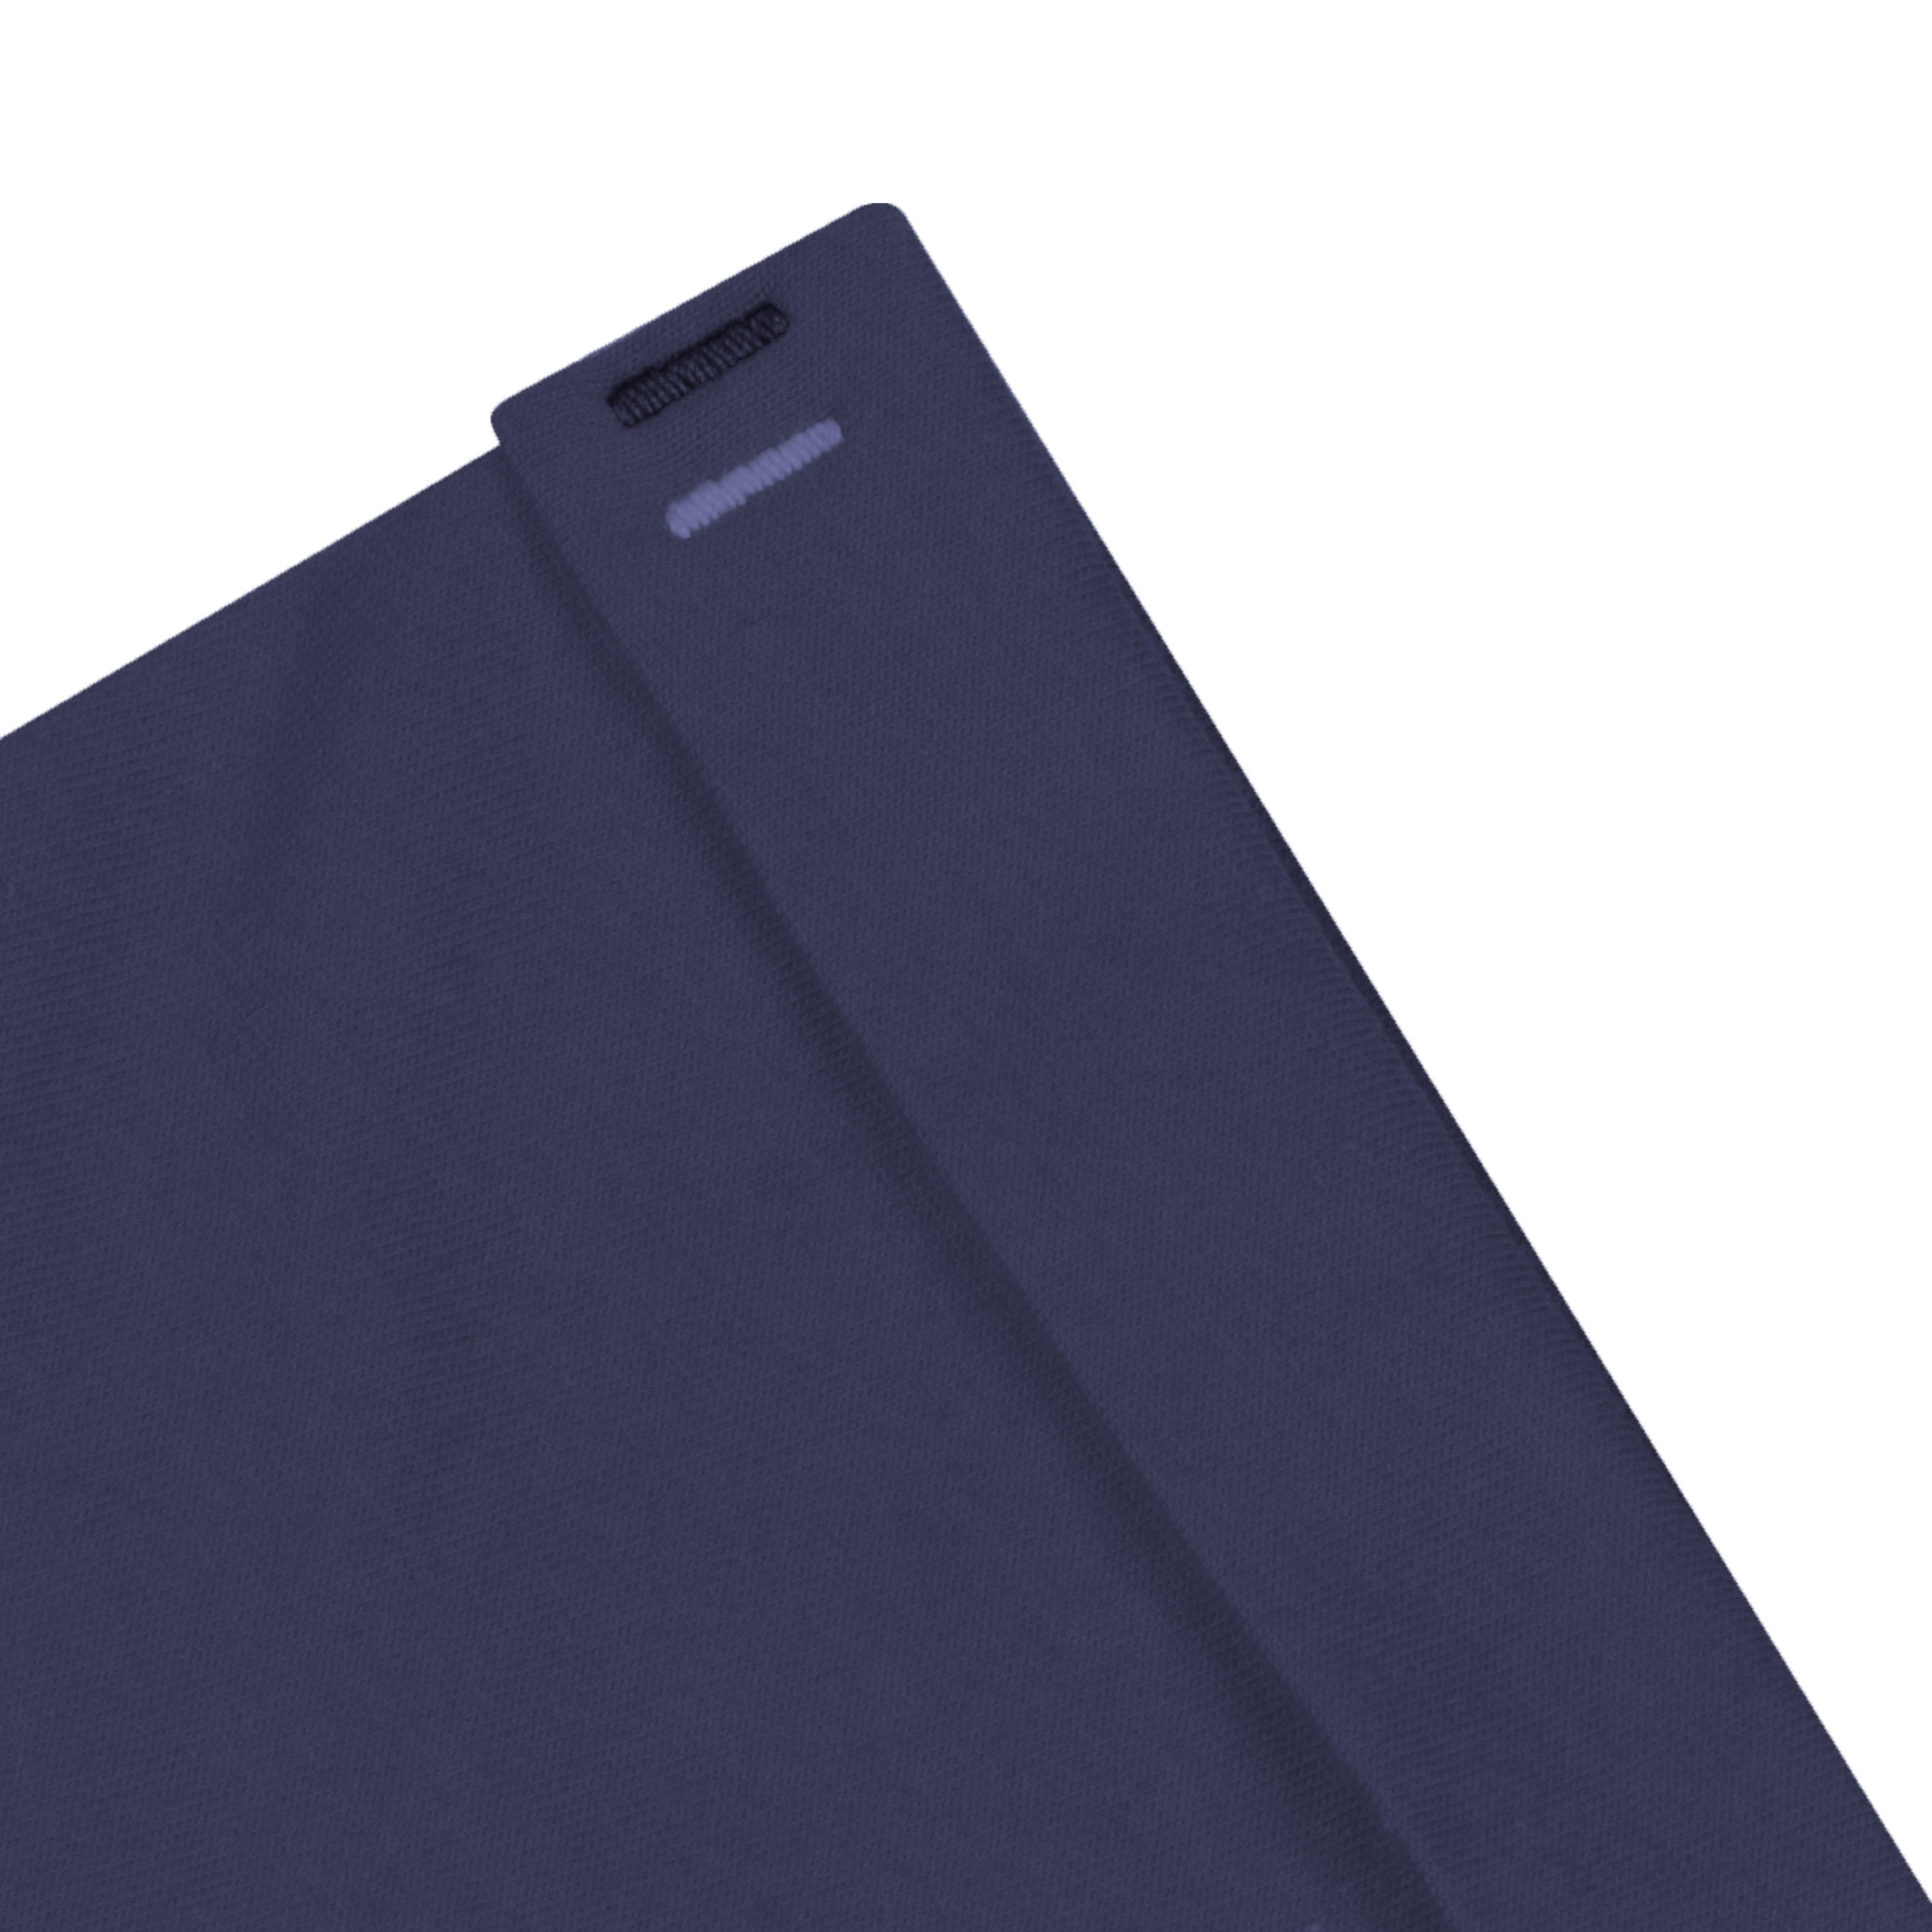 Мужская футболка Pantelemone MF-898 темно-синяя 48, цвет темно-синий, размер 48 - фото 5